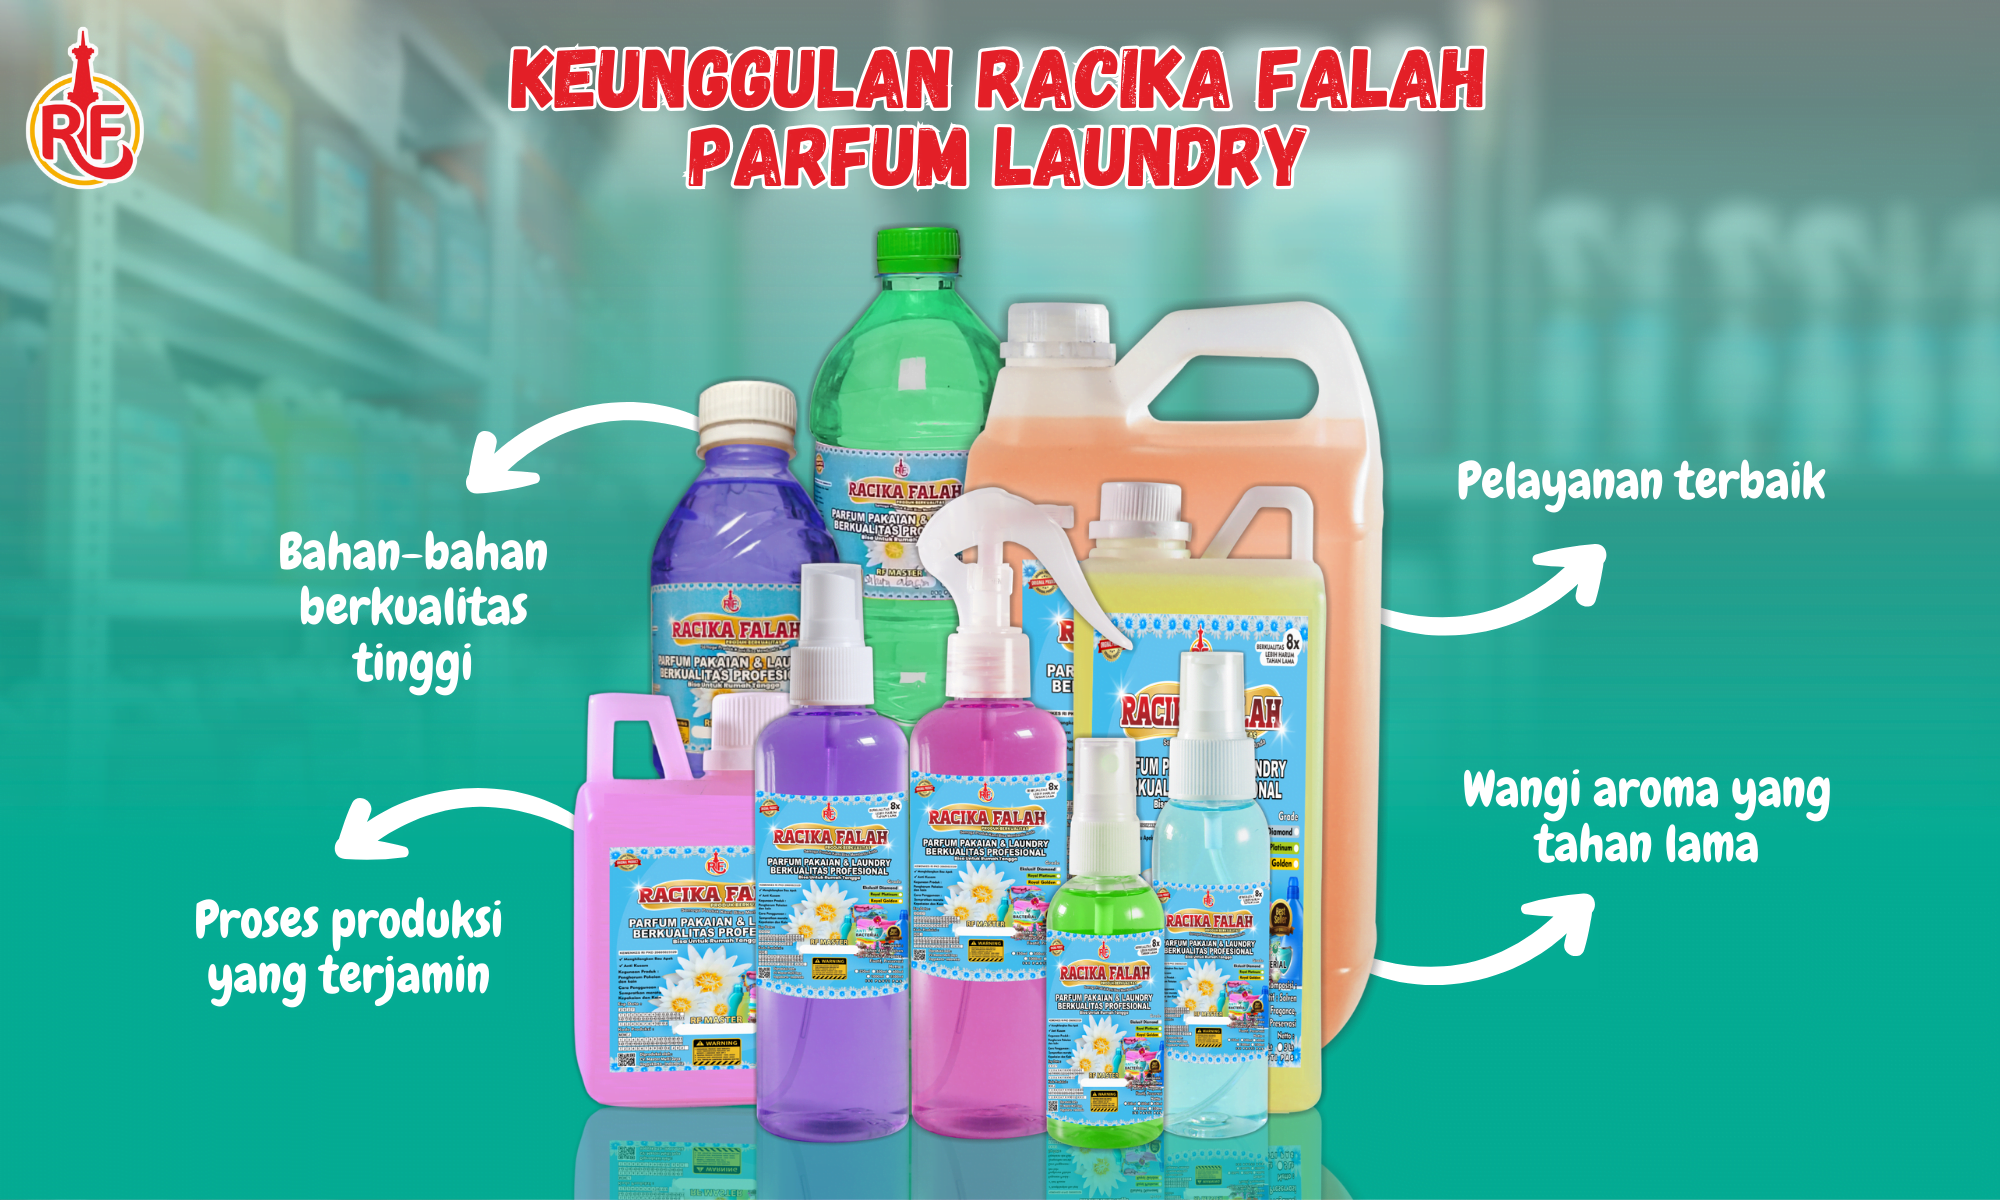 Informasi Parfum Laundry